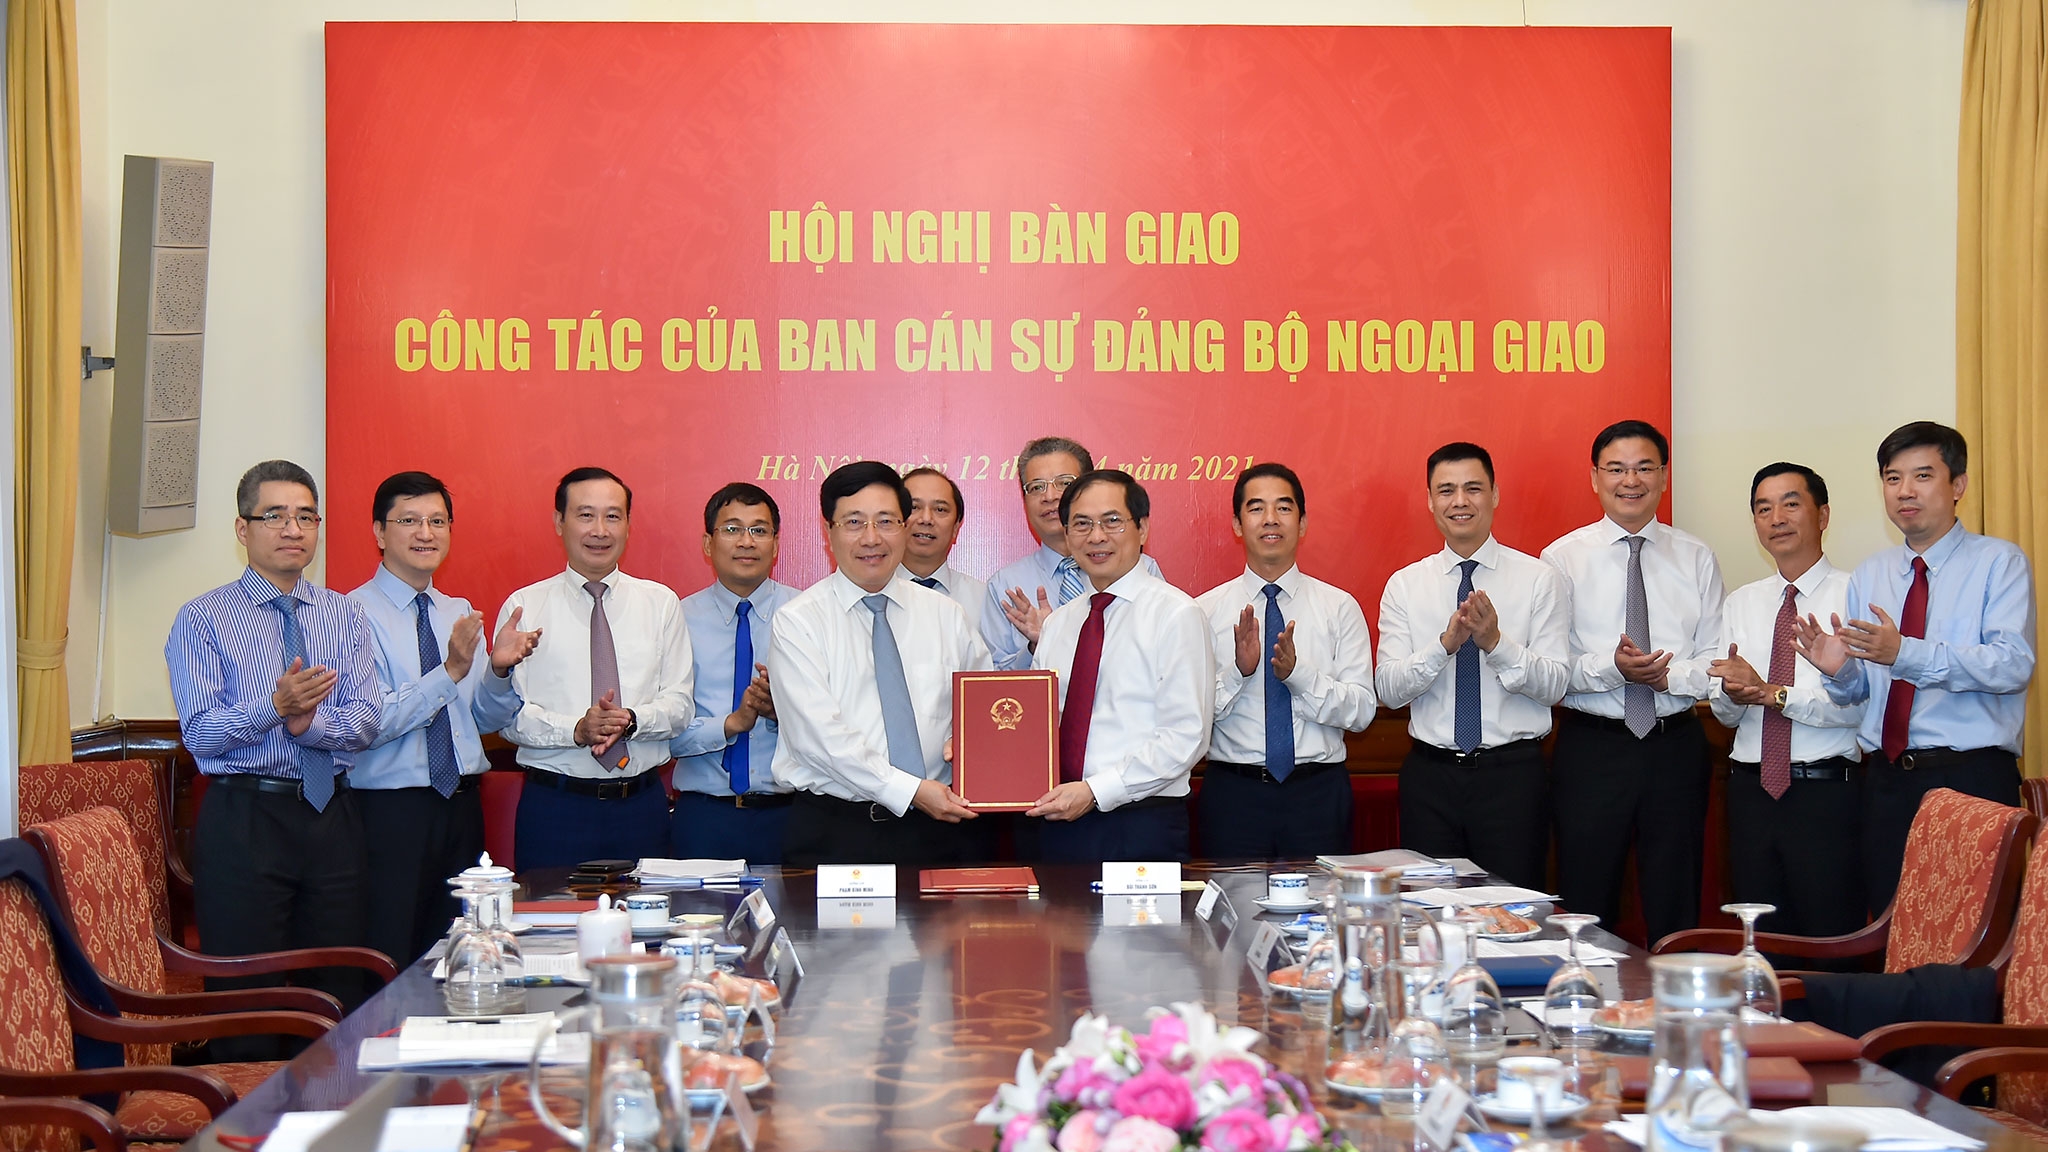 Ông Bùi Thanh Sơn chính thức nhận nhiệm vụ Bộ trưởng Bộ Ngoại giao